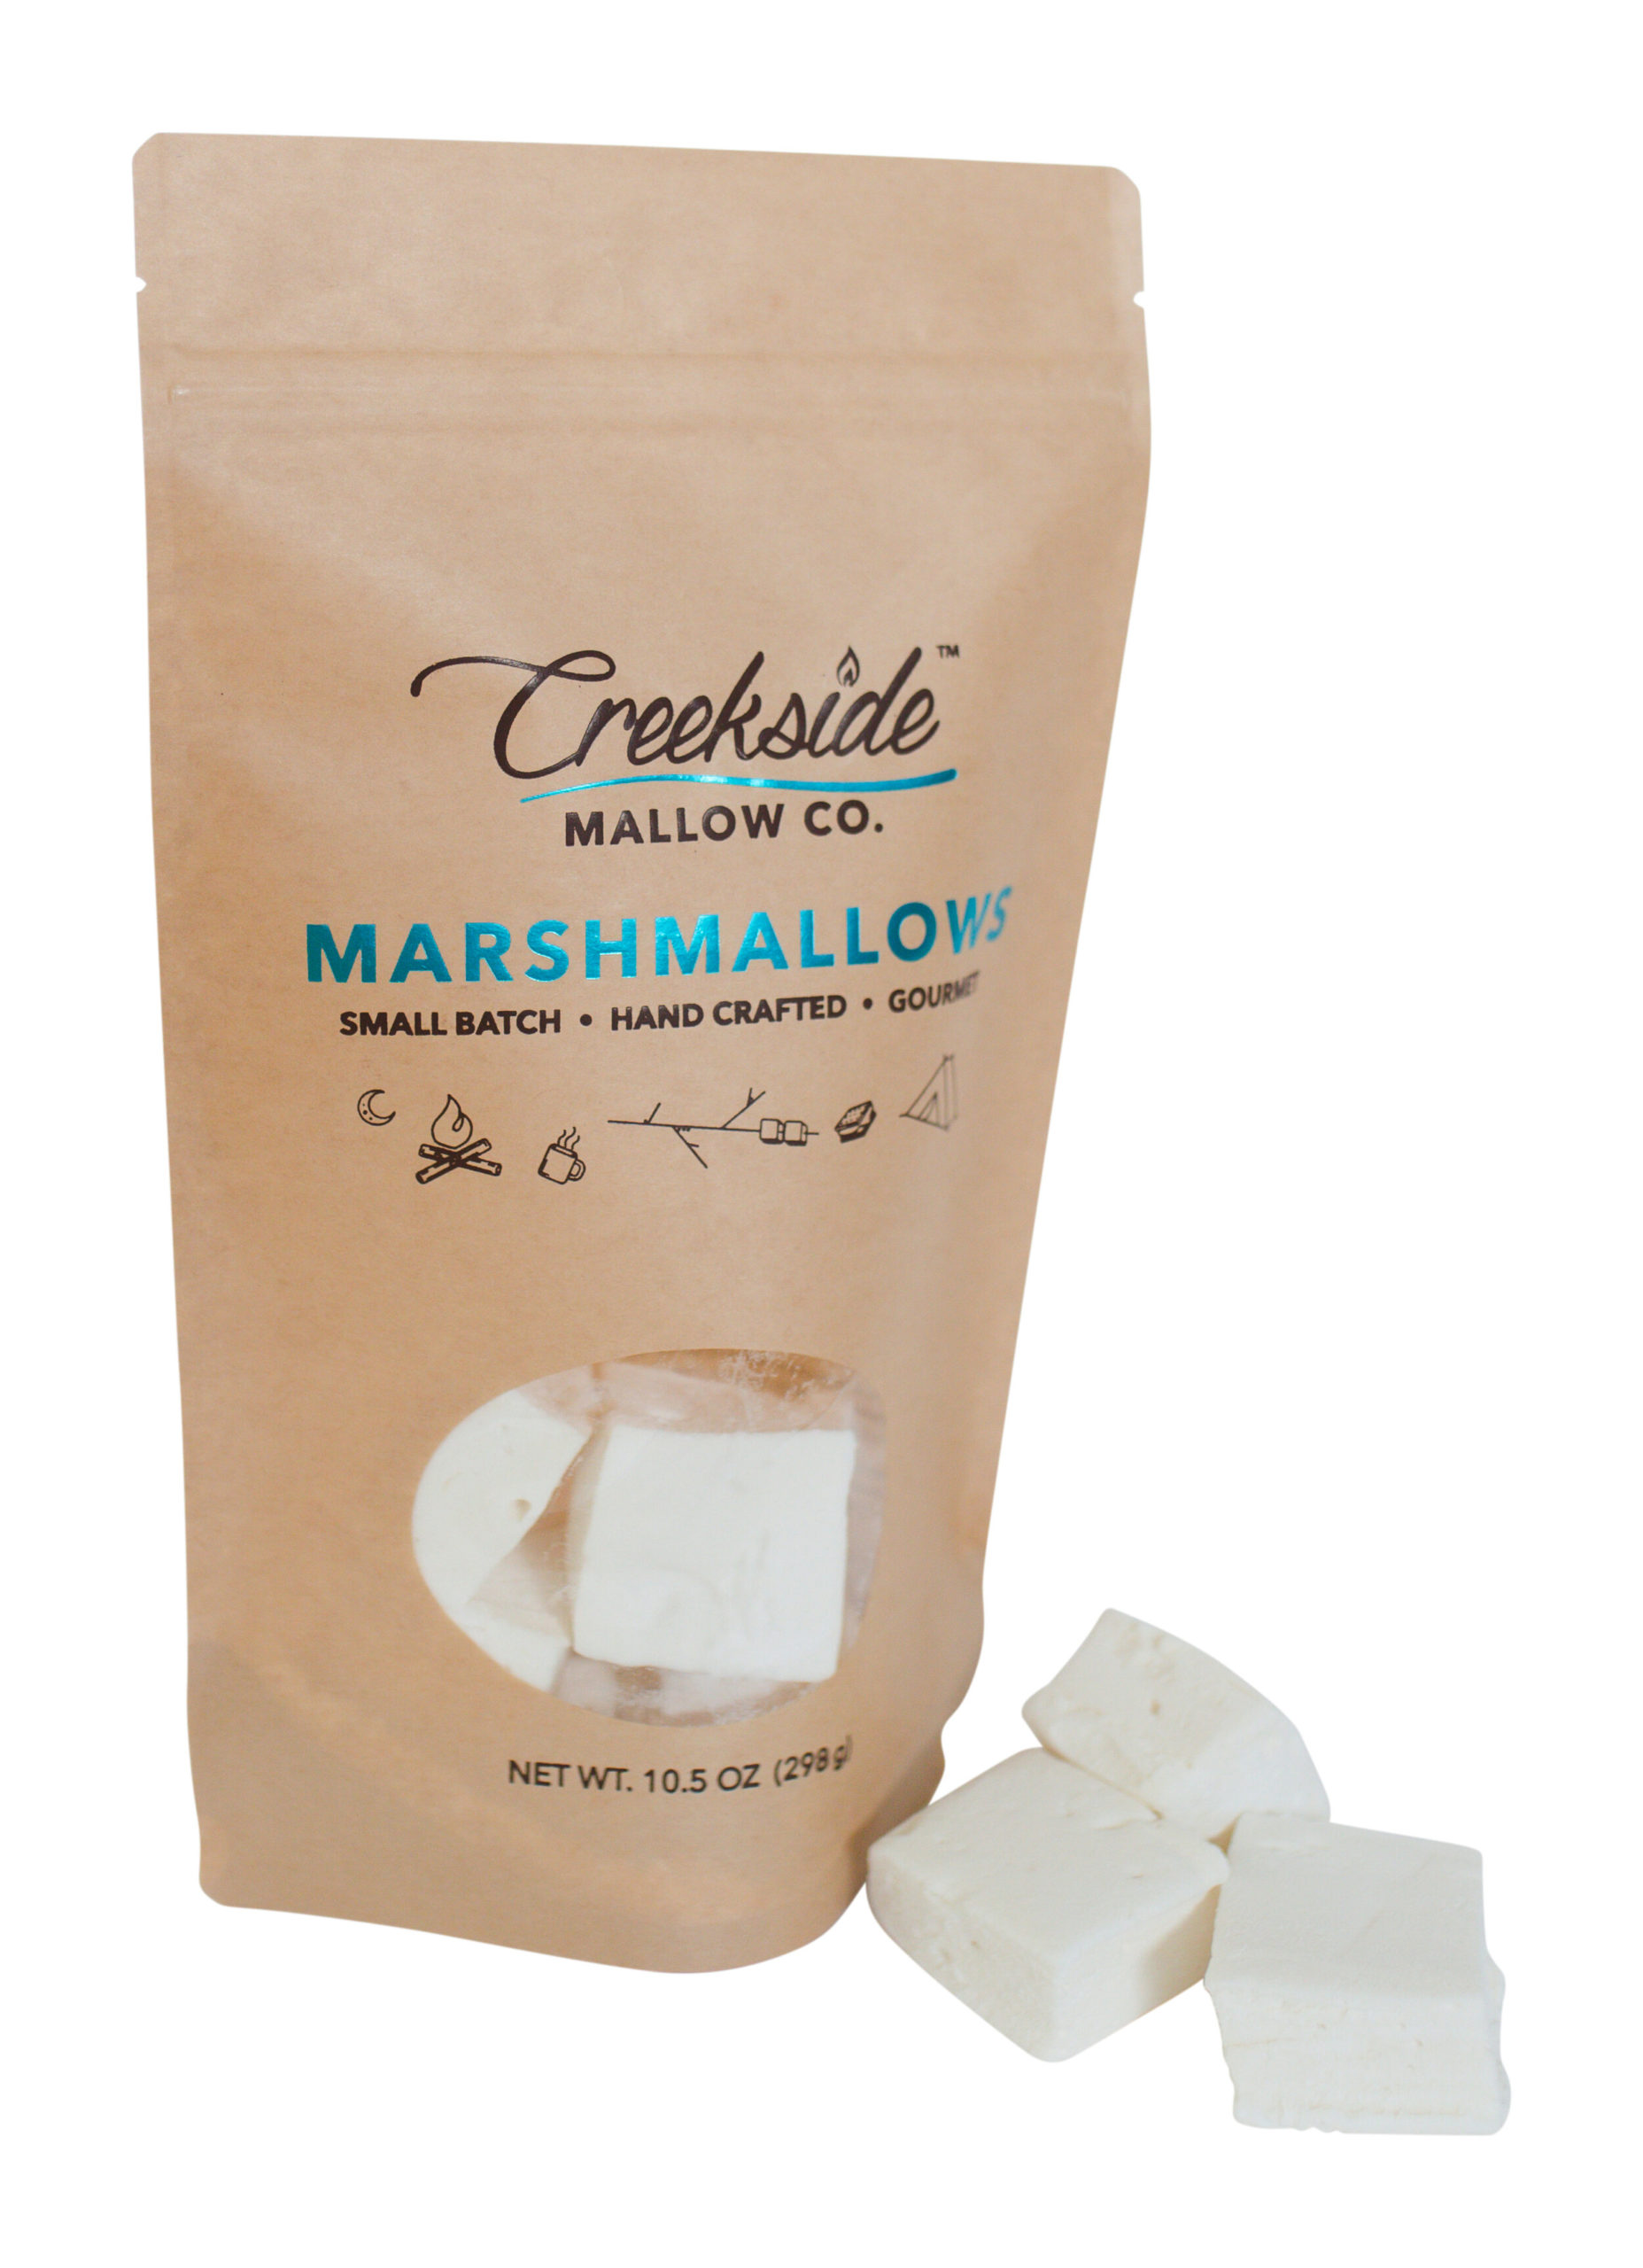 Co s marshmallow?